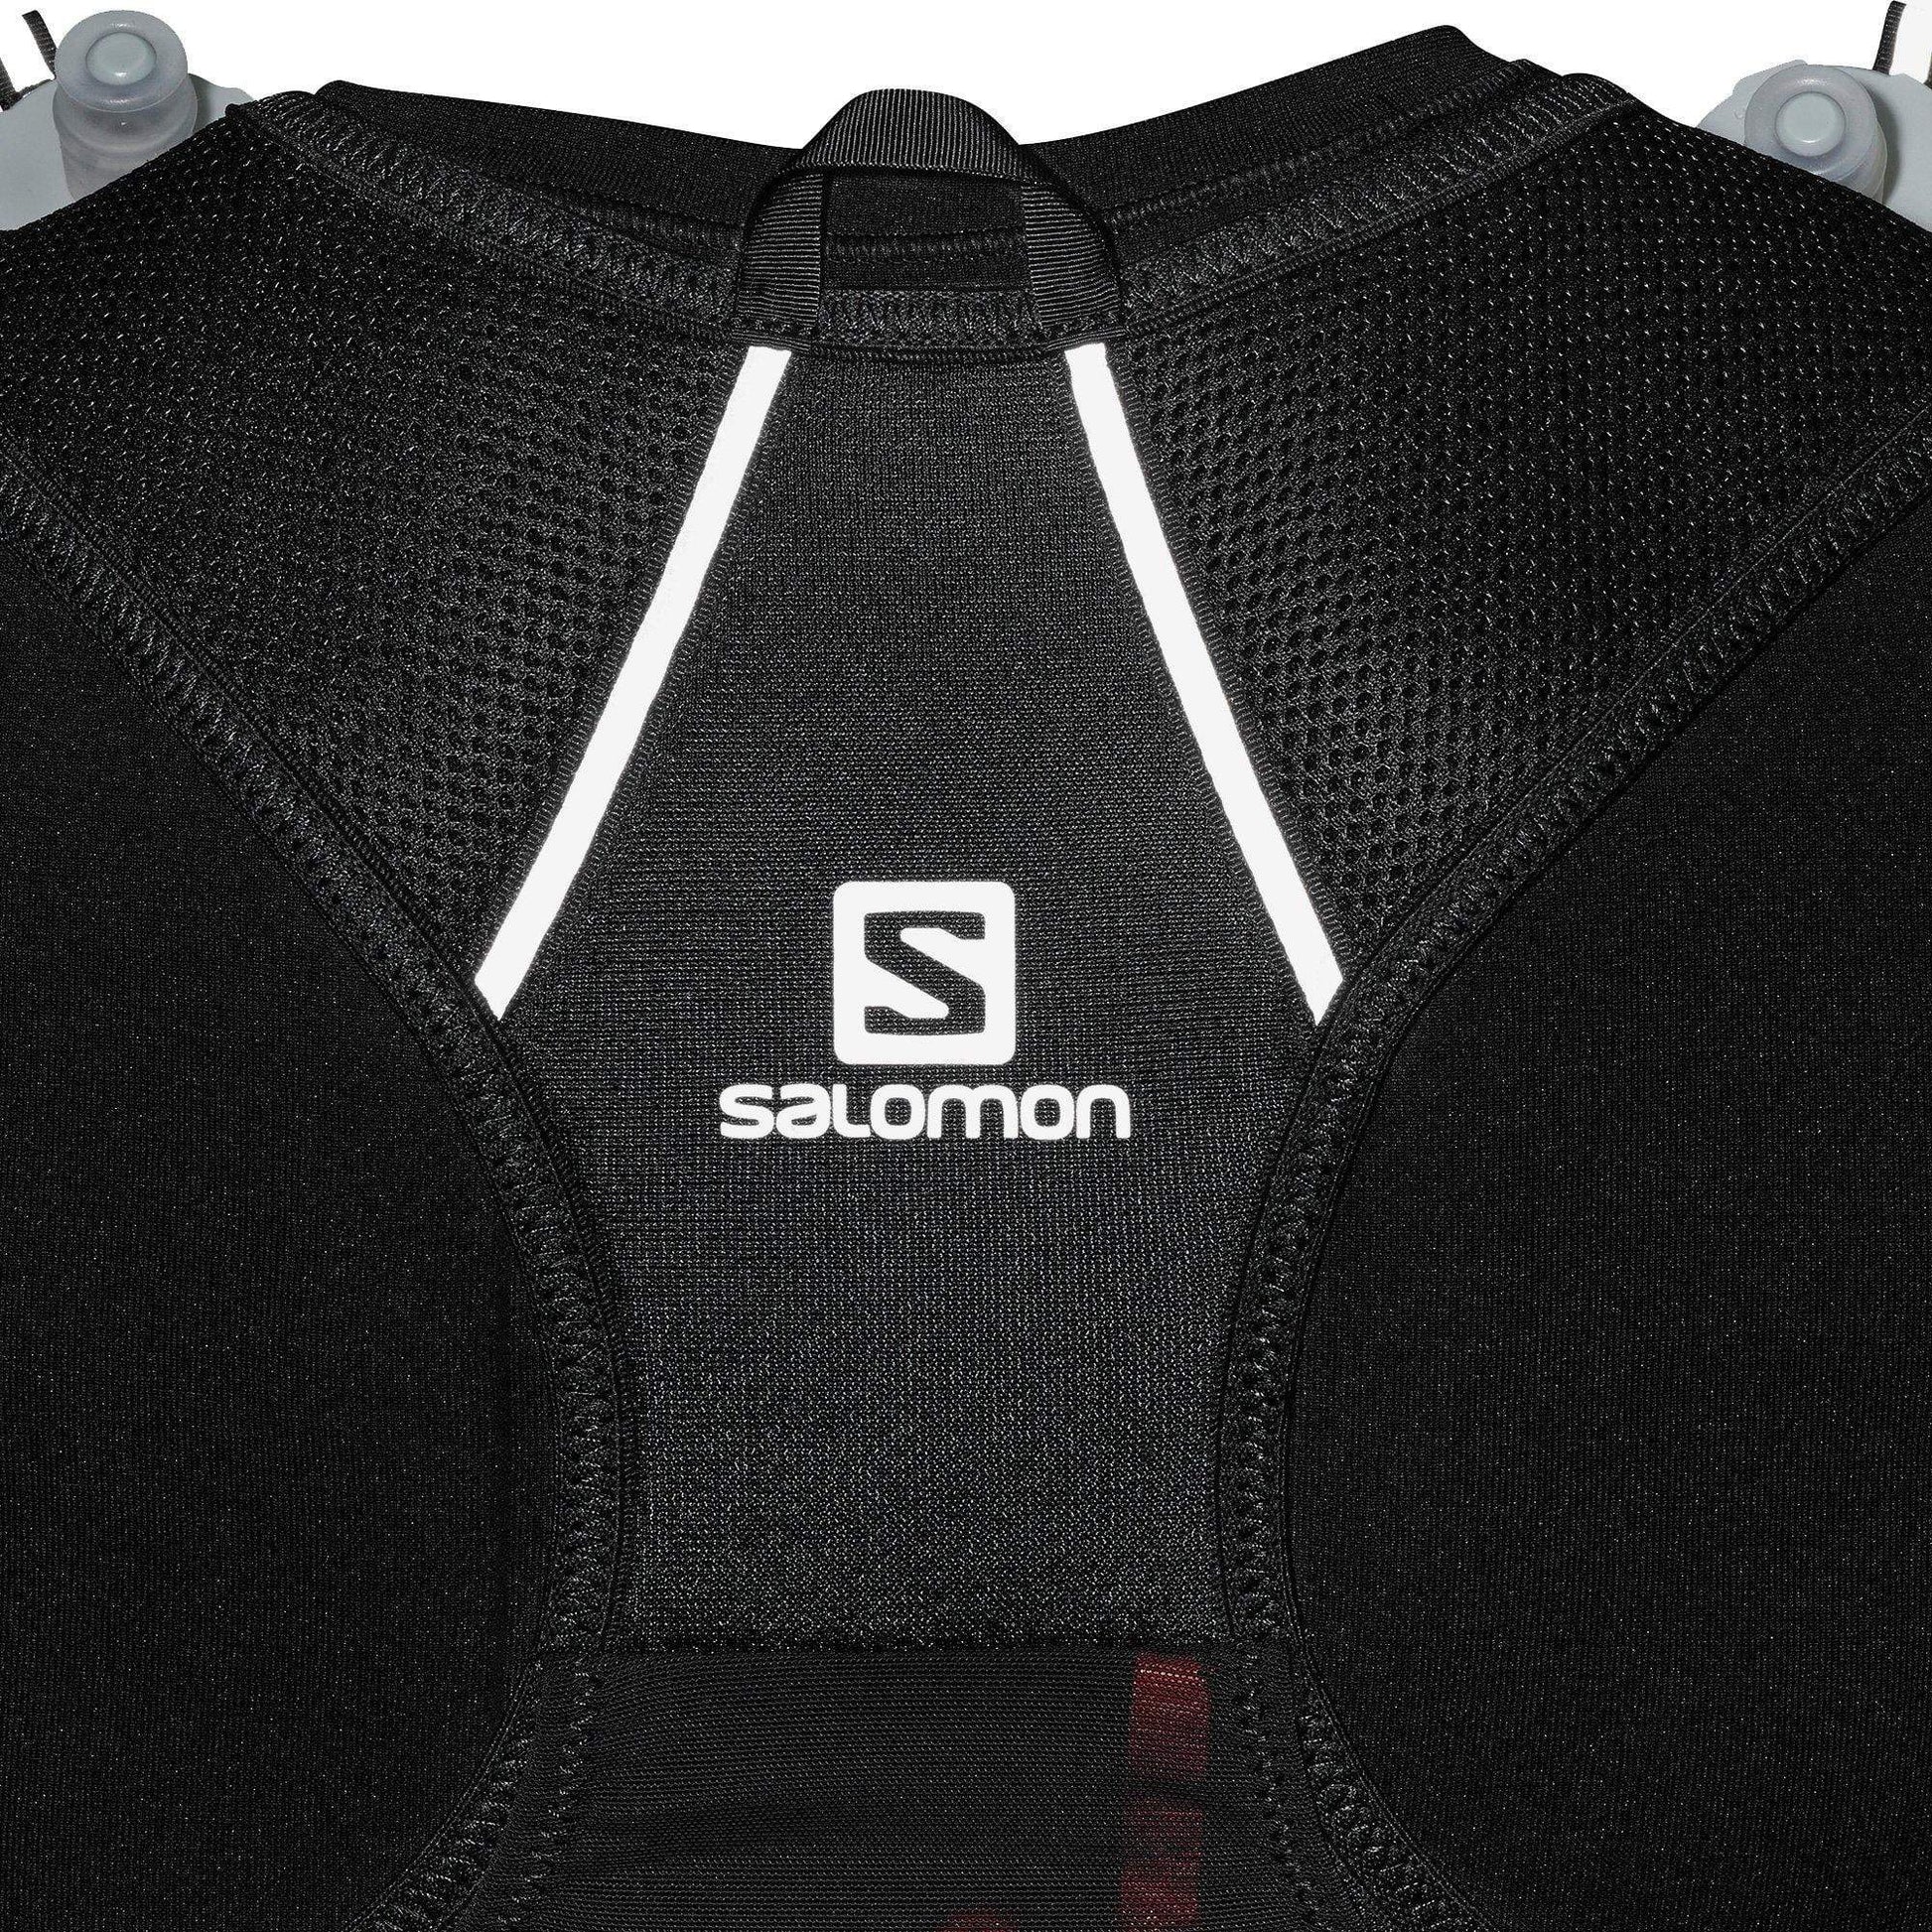 Salomon Agile 2 Set Running Backpack - Black 193128187927 - Start Fitness